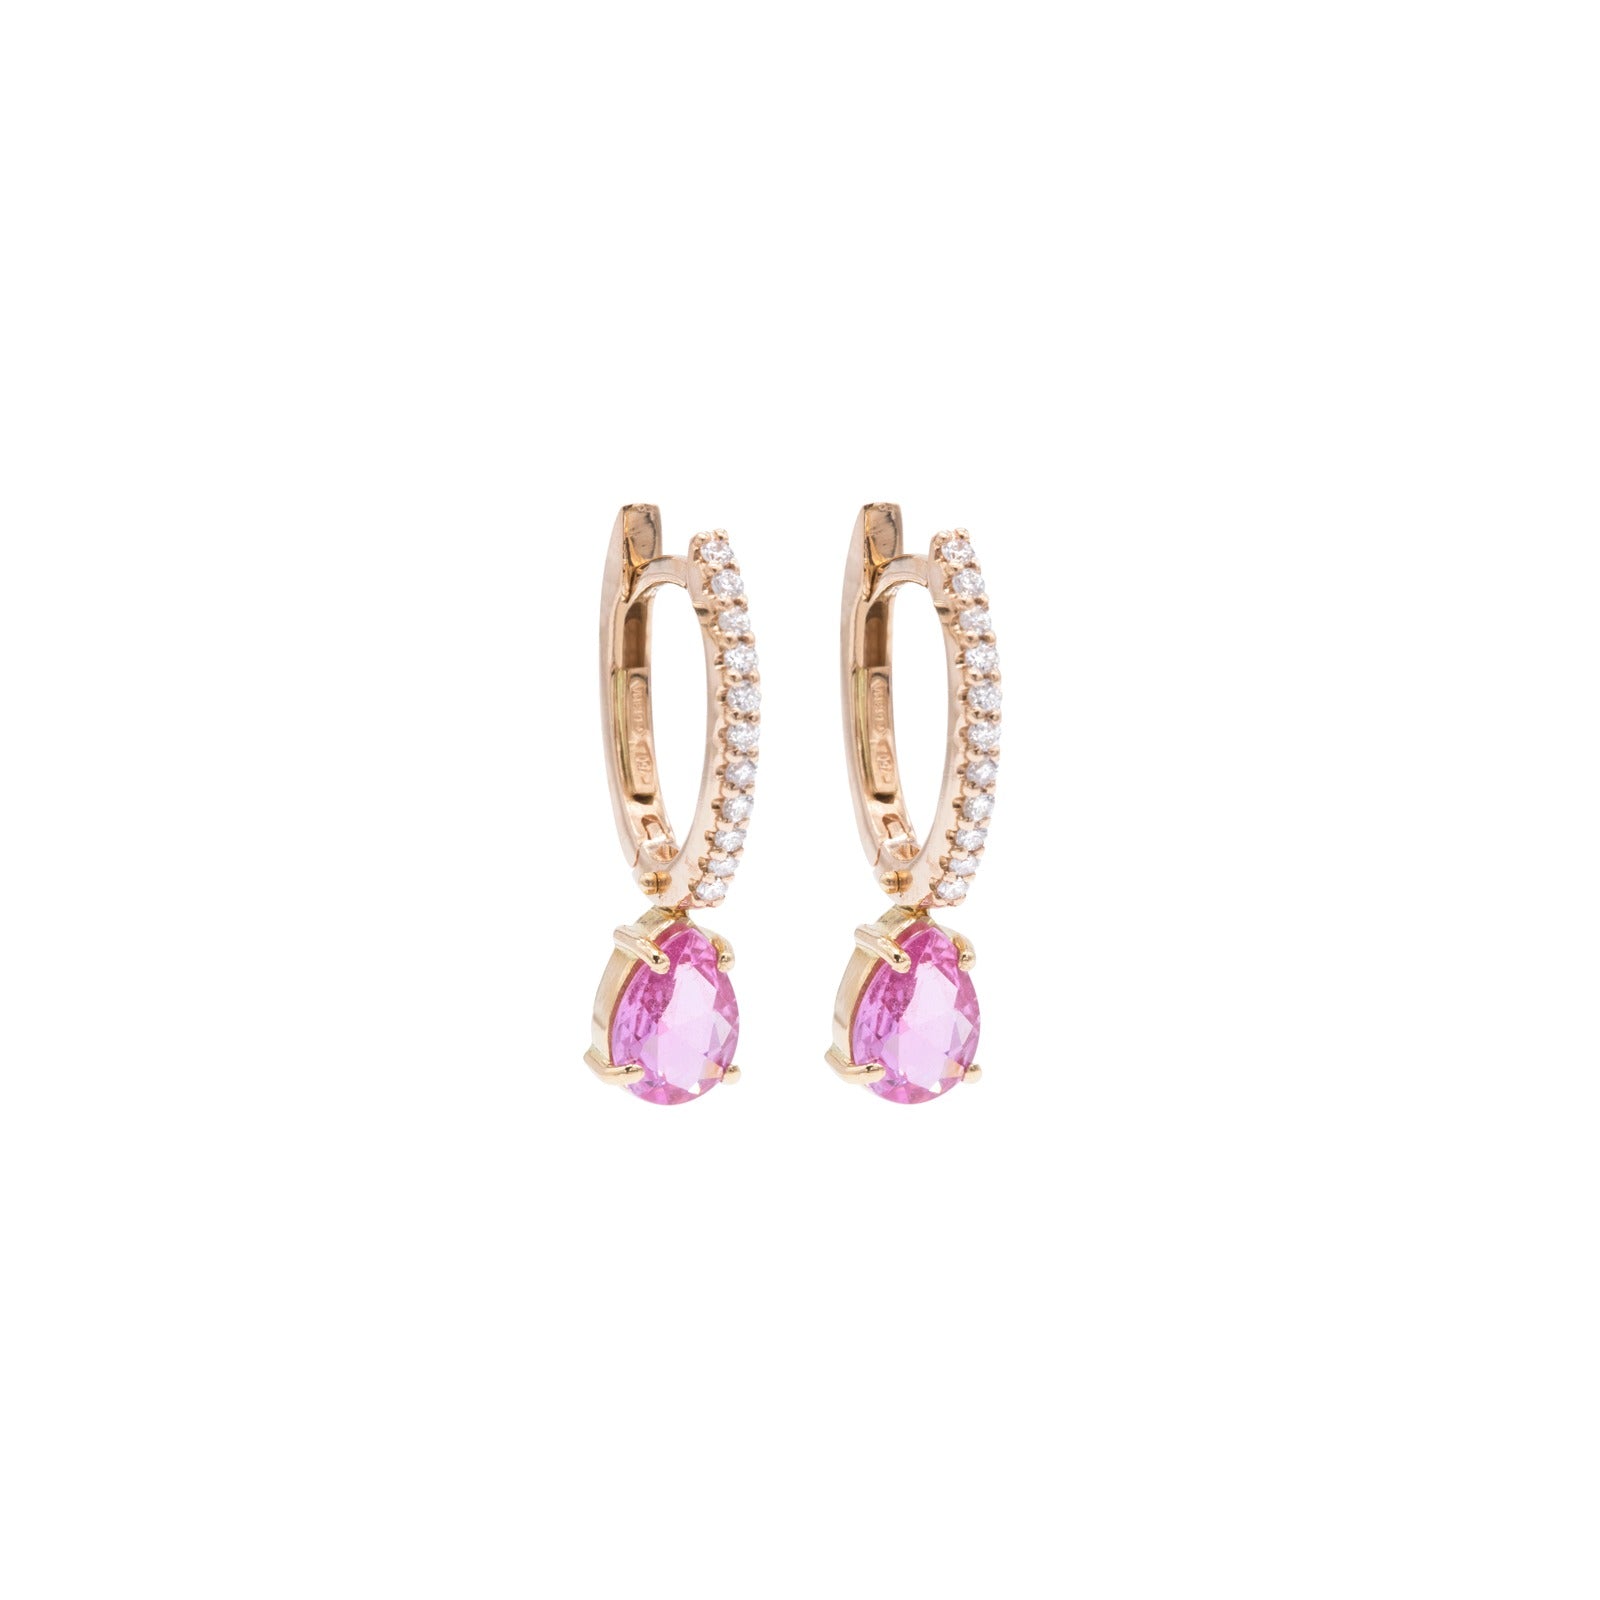 Diamond and pink sapphire hoop earrings